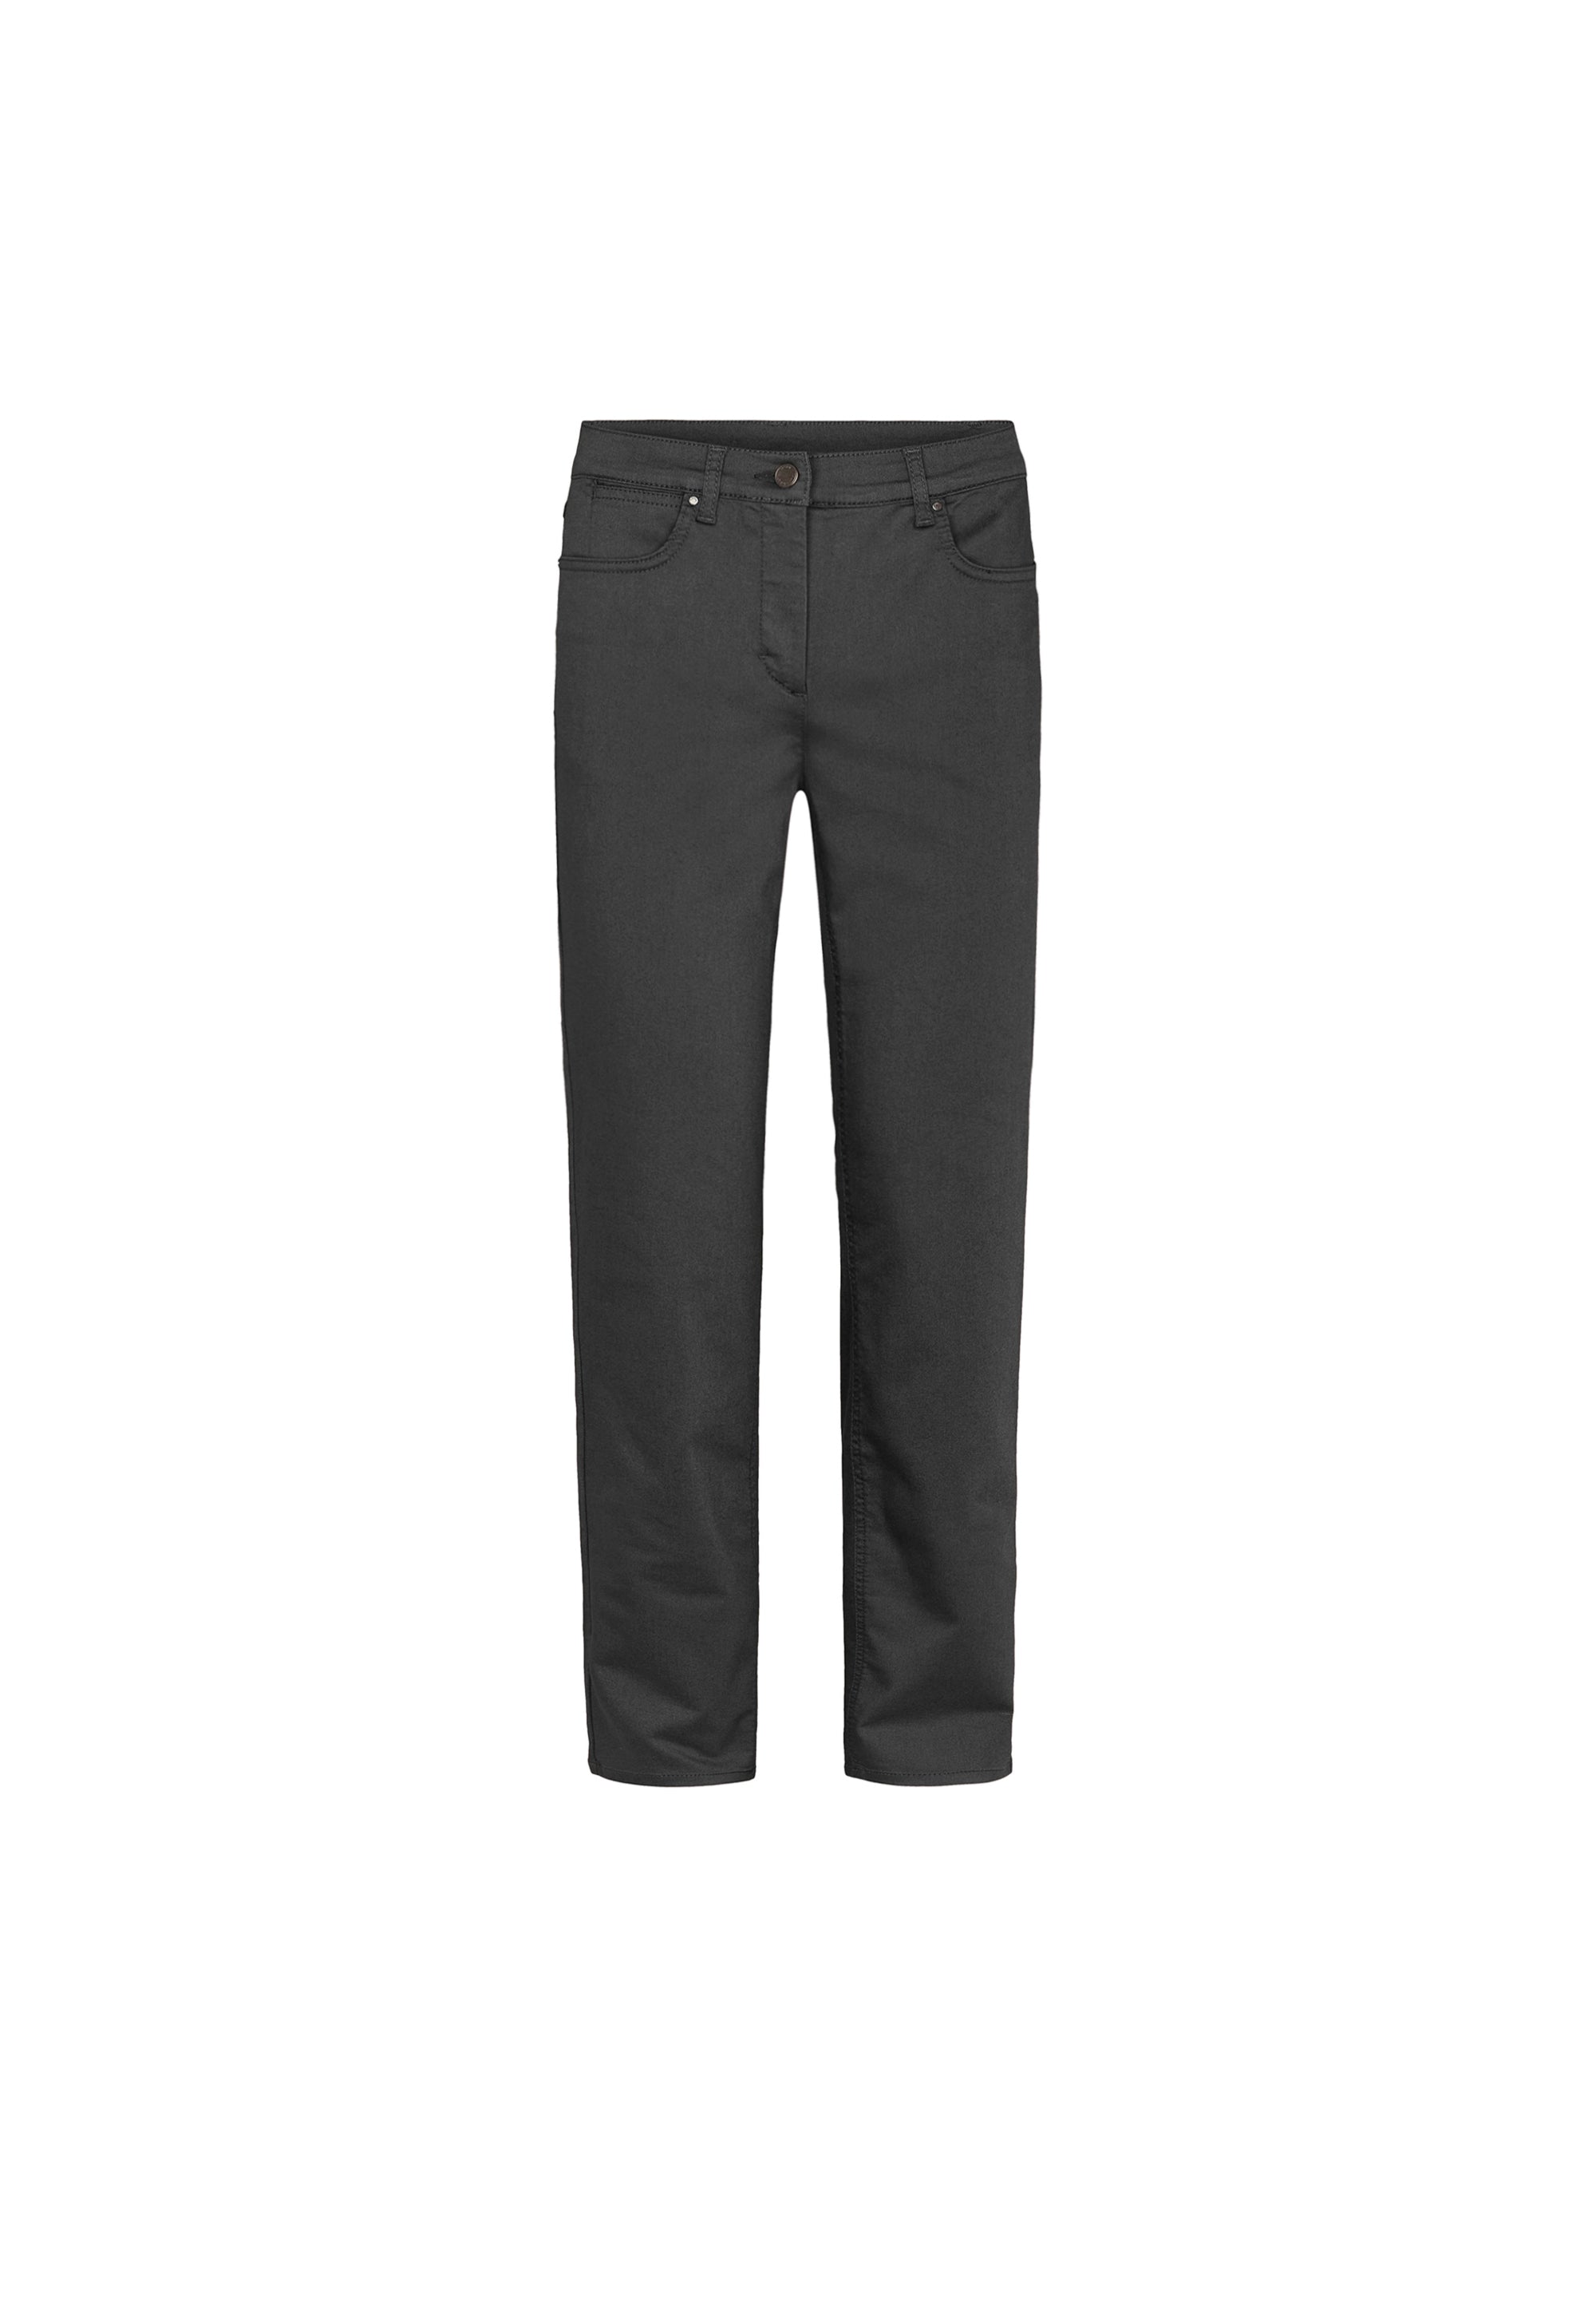 LAURIE Charlotte Regular - Short Length Trousers REGULAR 99000 Black